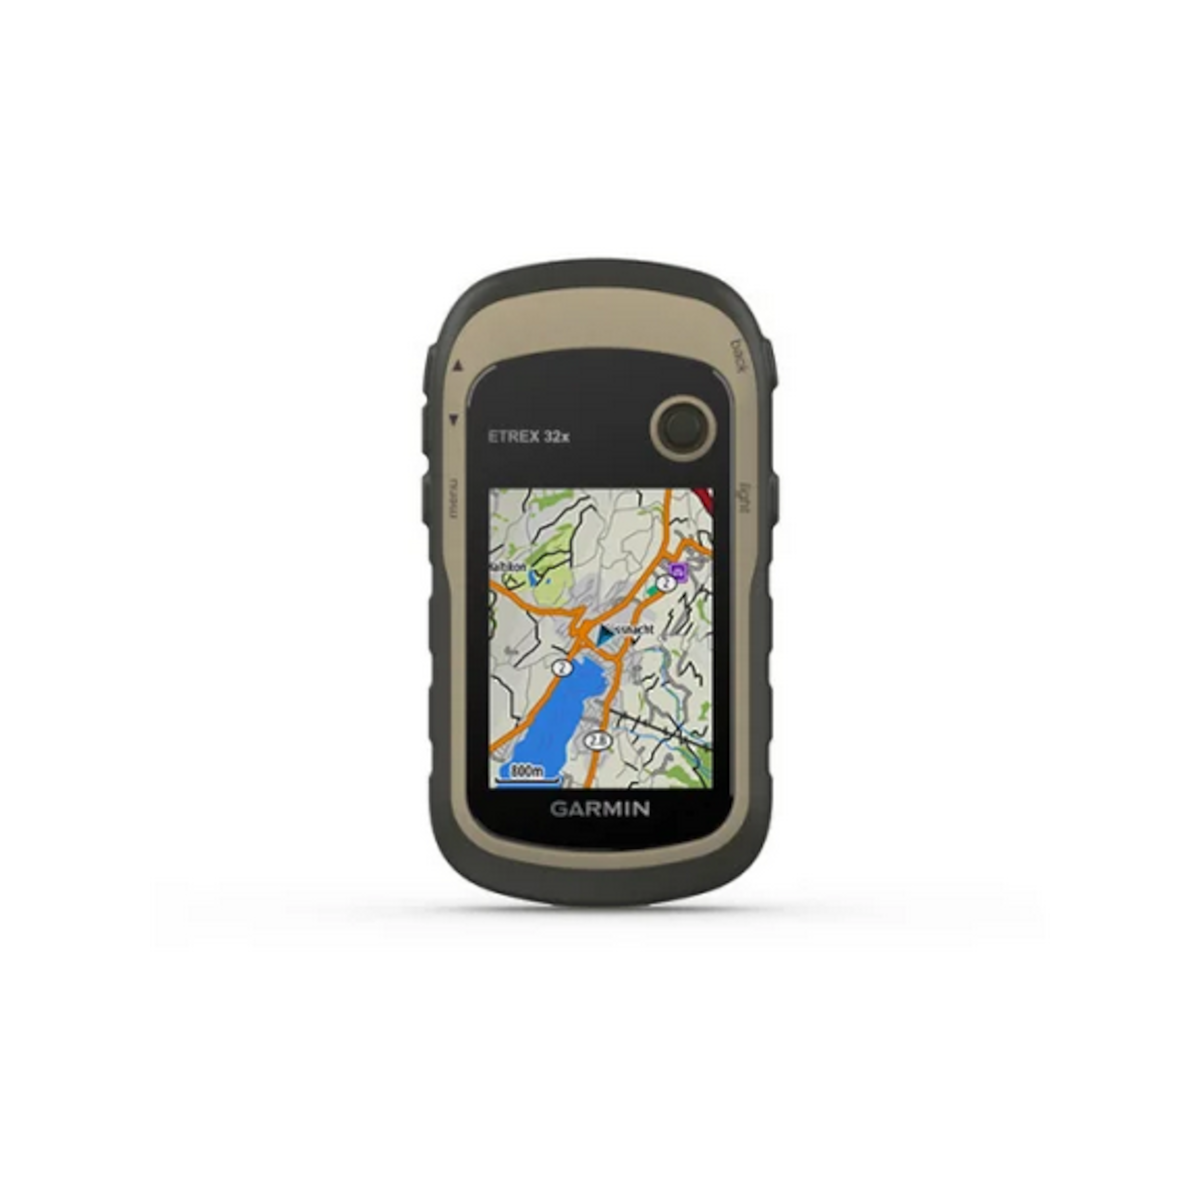 Garmin eTrex 32x GPS portable - marron